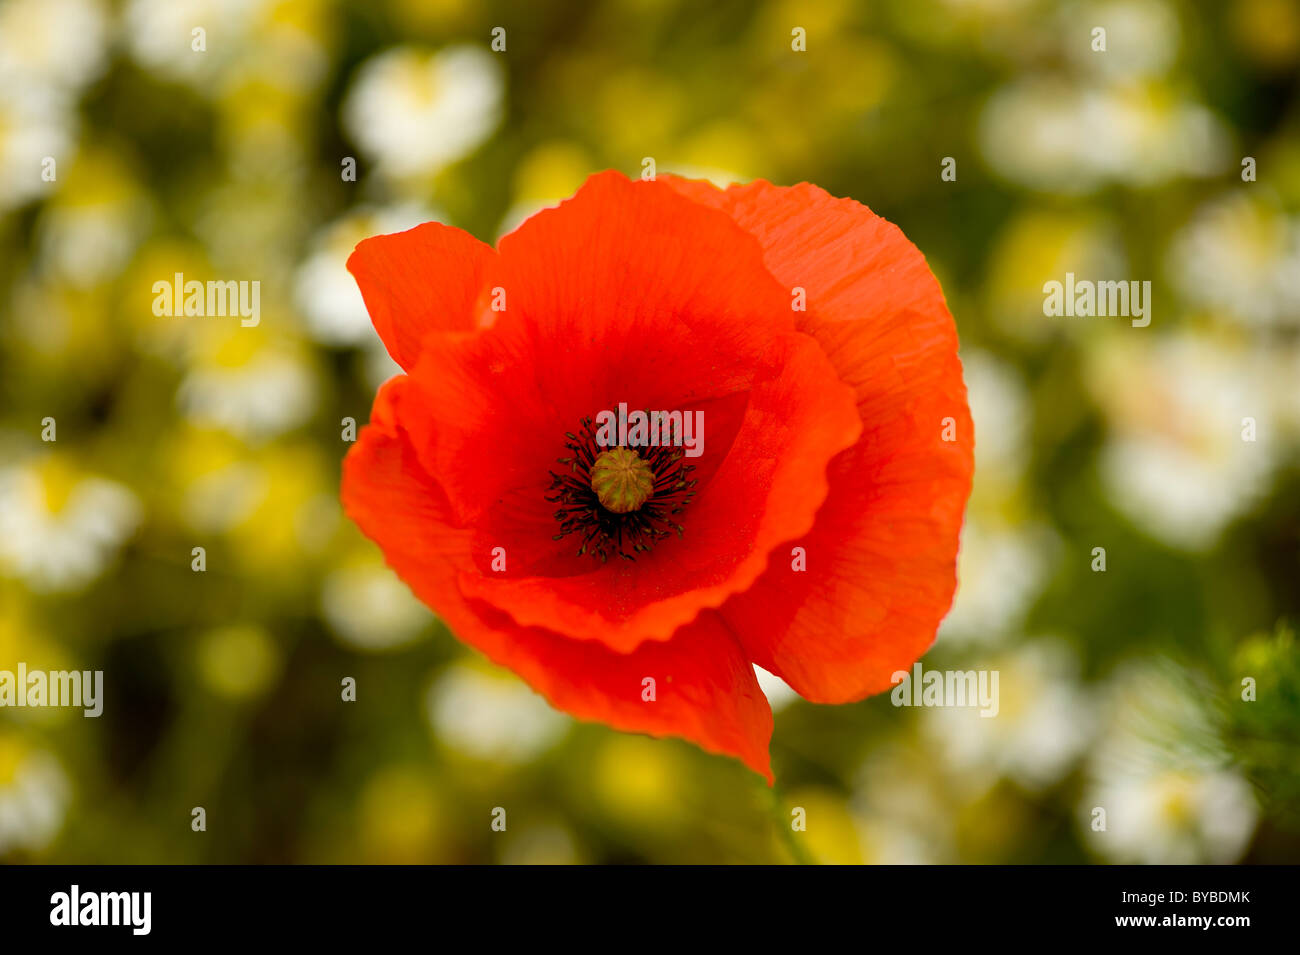 Una sola amapola común roja con margaritas de ojo de buey fuera de foco en el fondo, creciendo en un prado de flores silvestres. Foto de stock